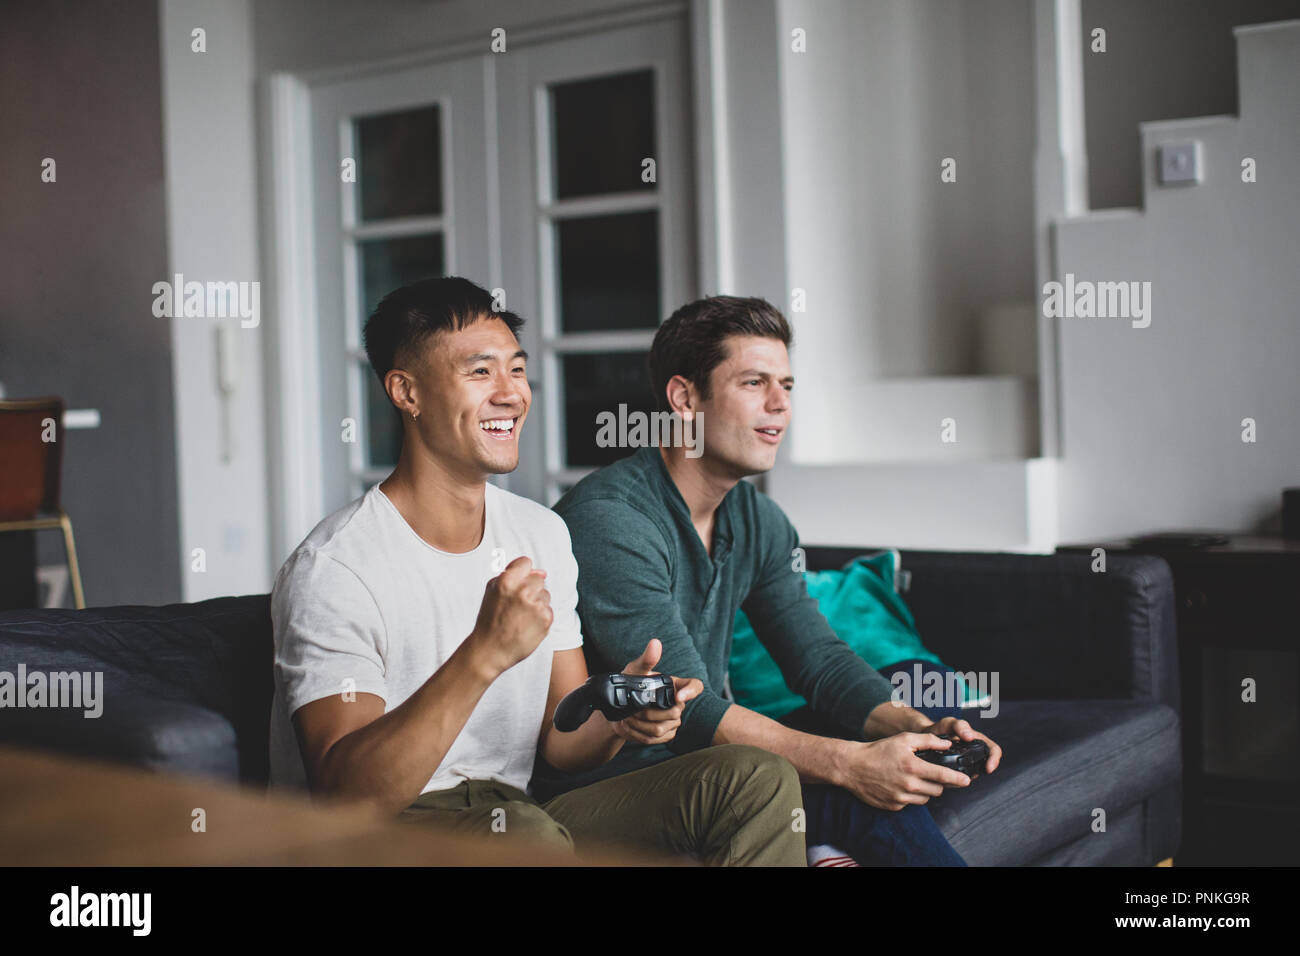 Amigos varones jugando en una consola de juegos Foto de stock